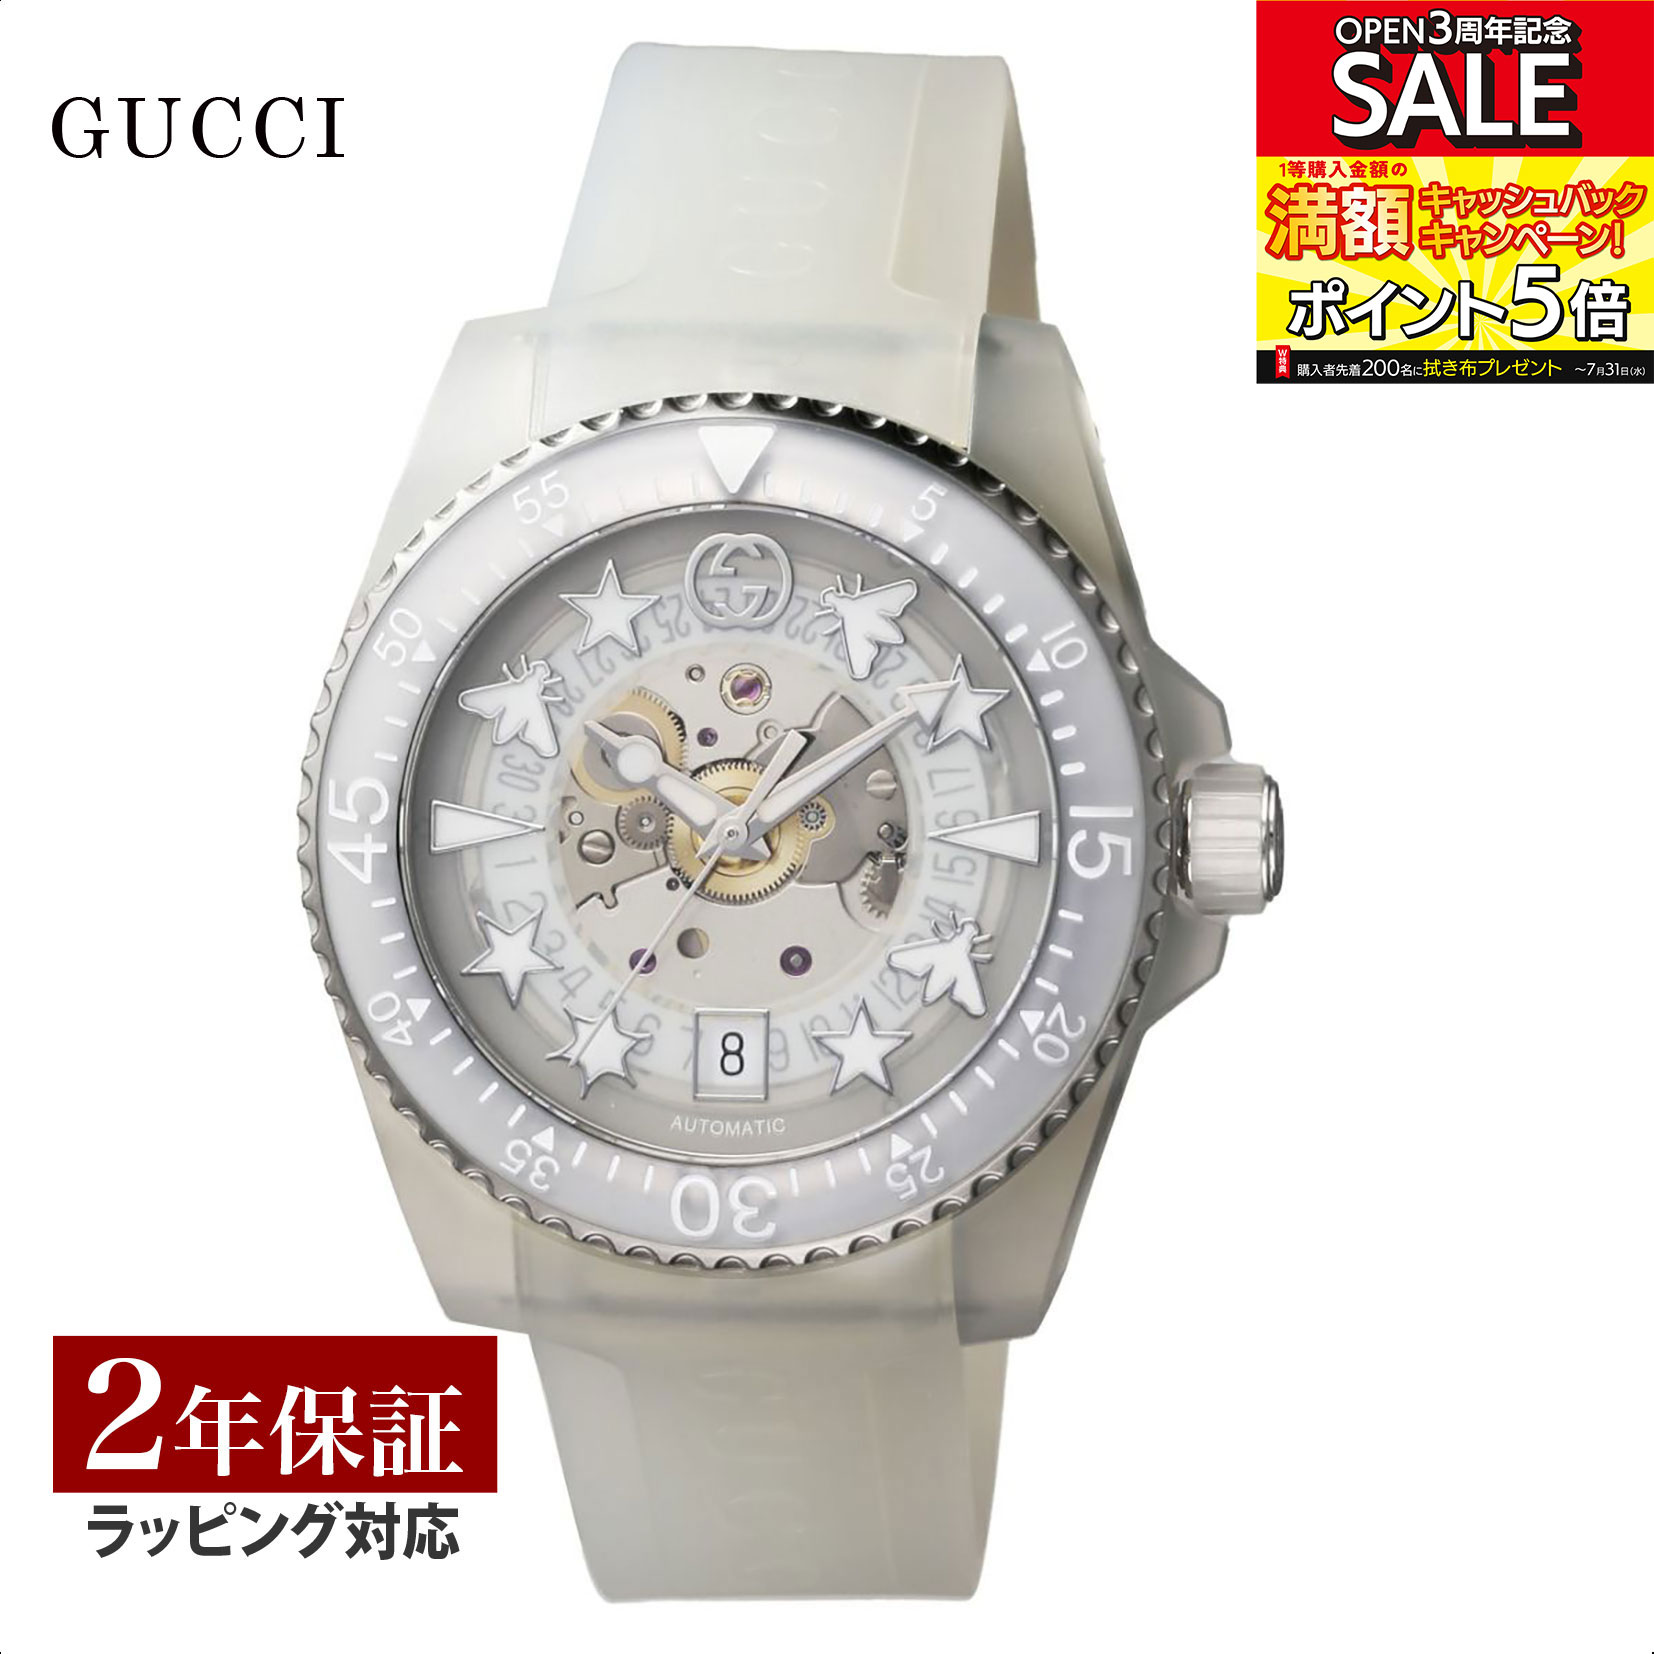 【当店限定】 グッチ GUCCI メンズ 時計 DIVE ダイブ 自動巻 ホワイト YA136342 時計 腕時計 高級腕時計 ブランド